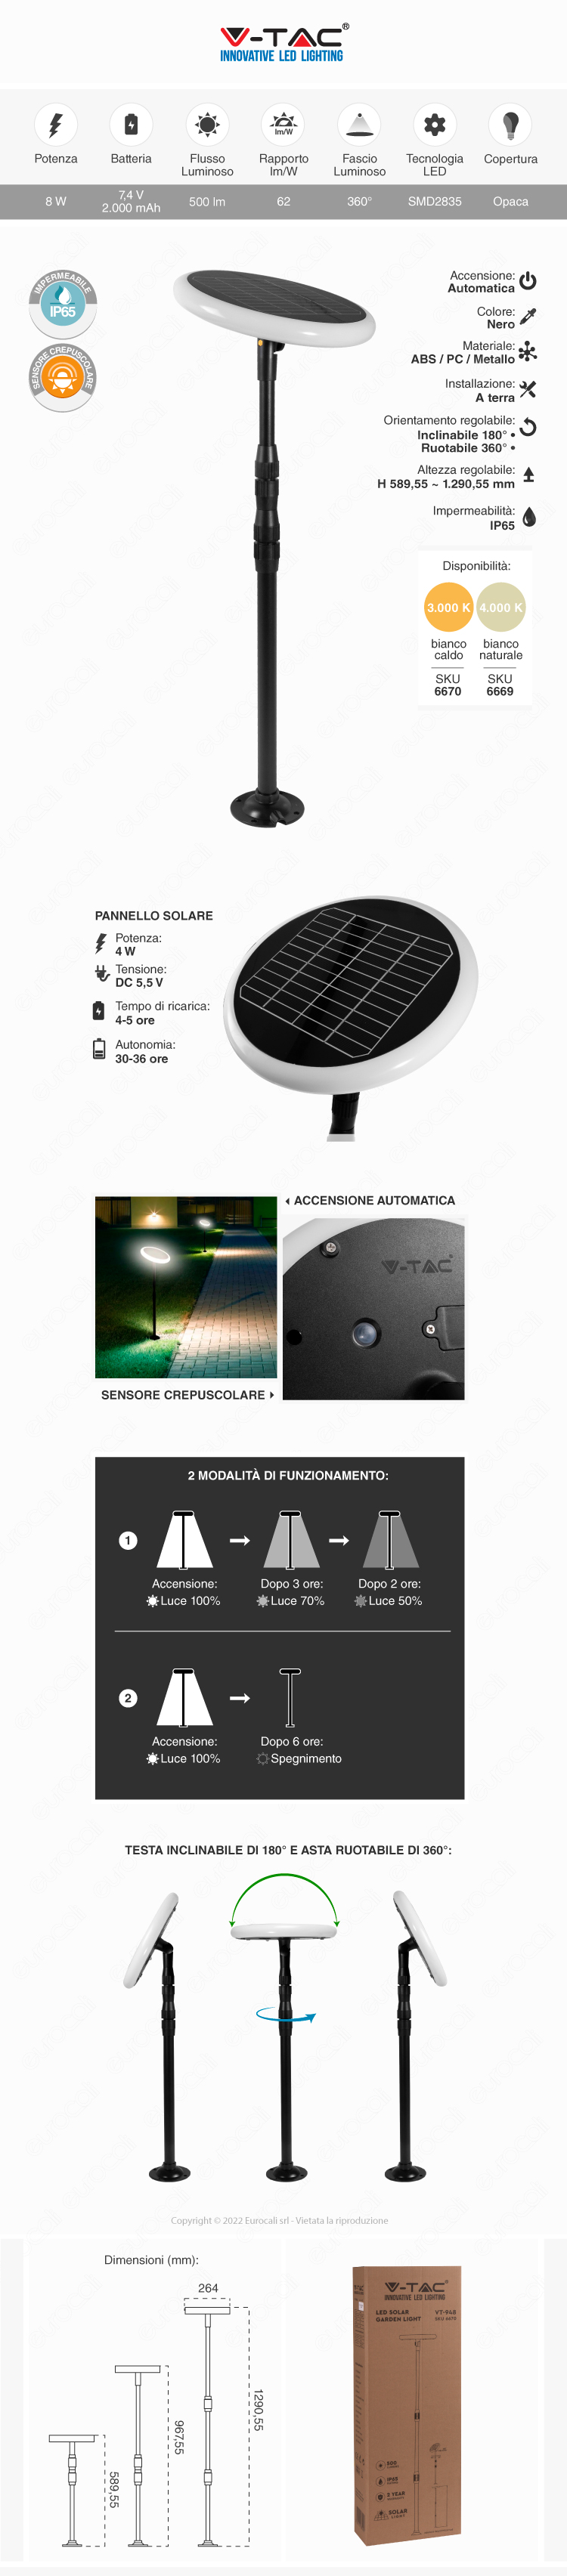 lampada giardino led v-tac pannello solare sensore crepuscolare 8w smd ip65 nero